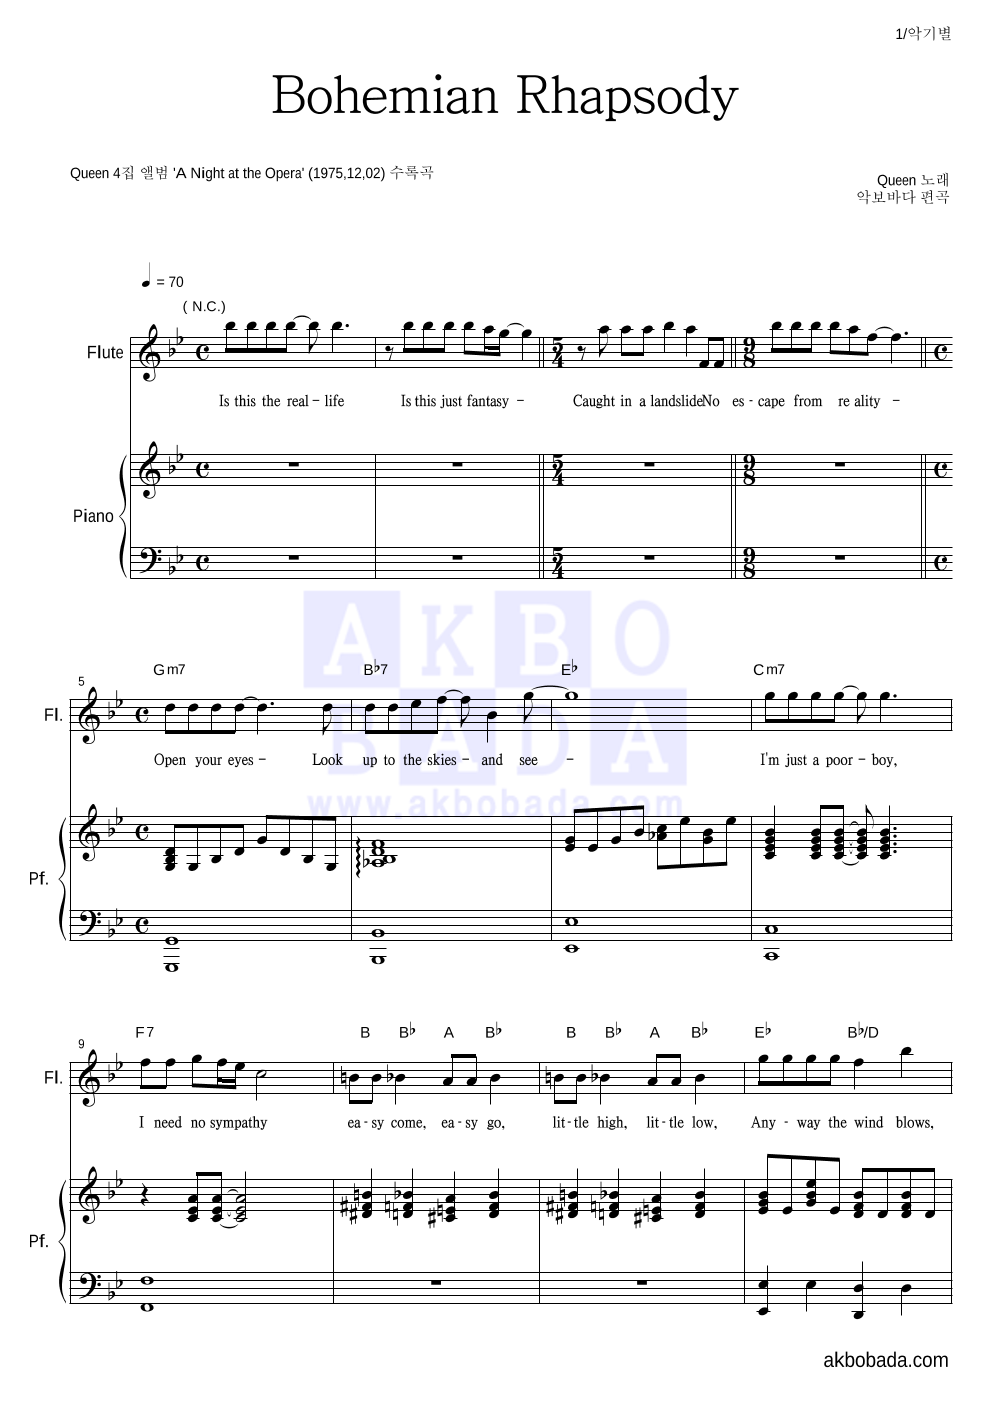 Queen - Bohemian Rhapsody 플룻&피아노 악보 